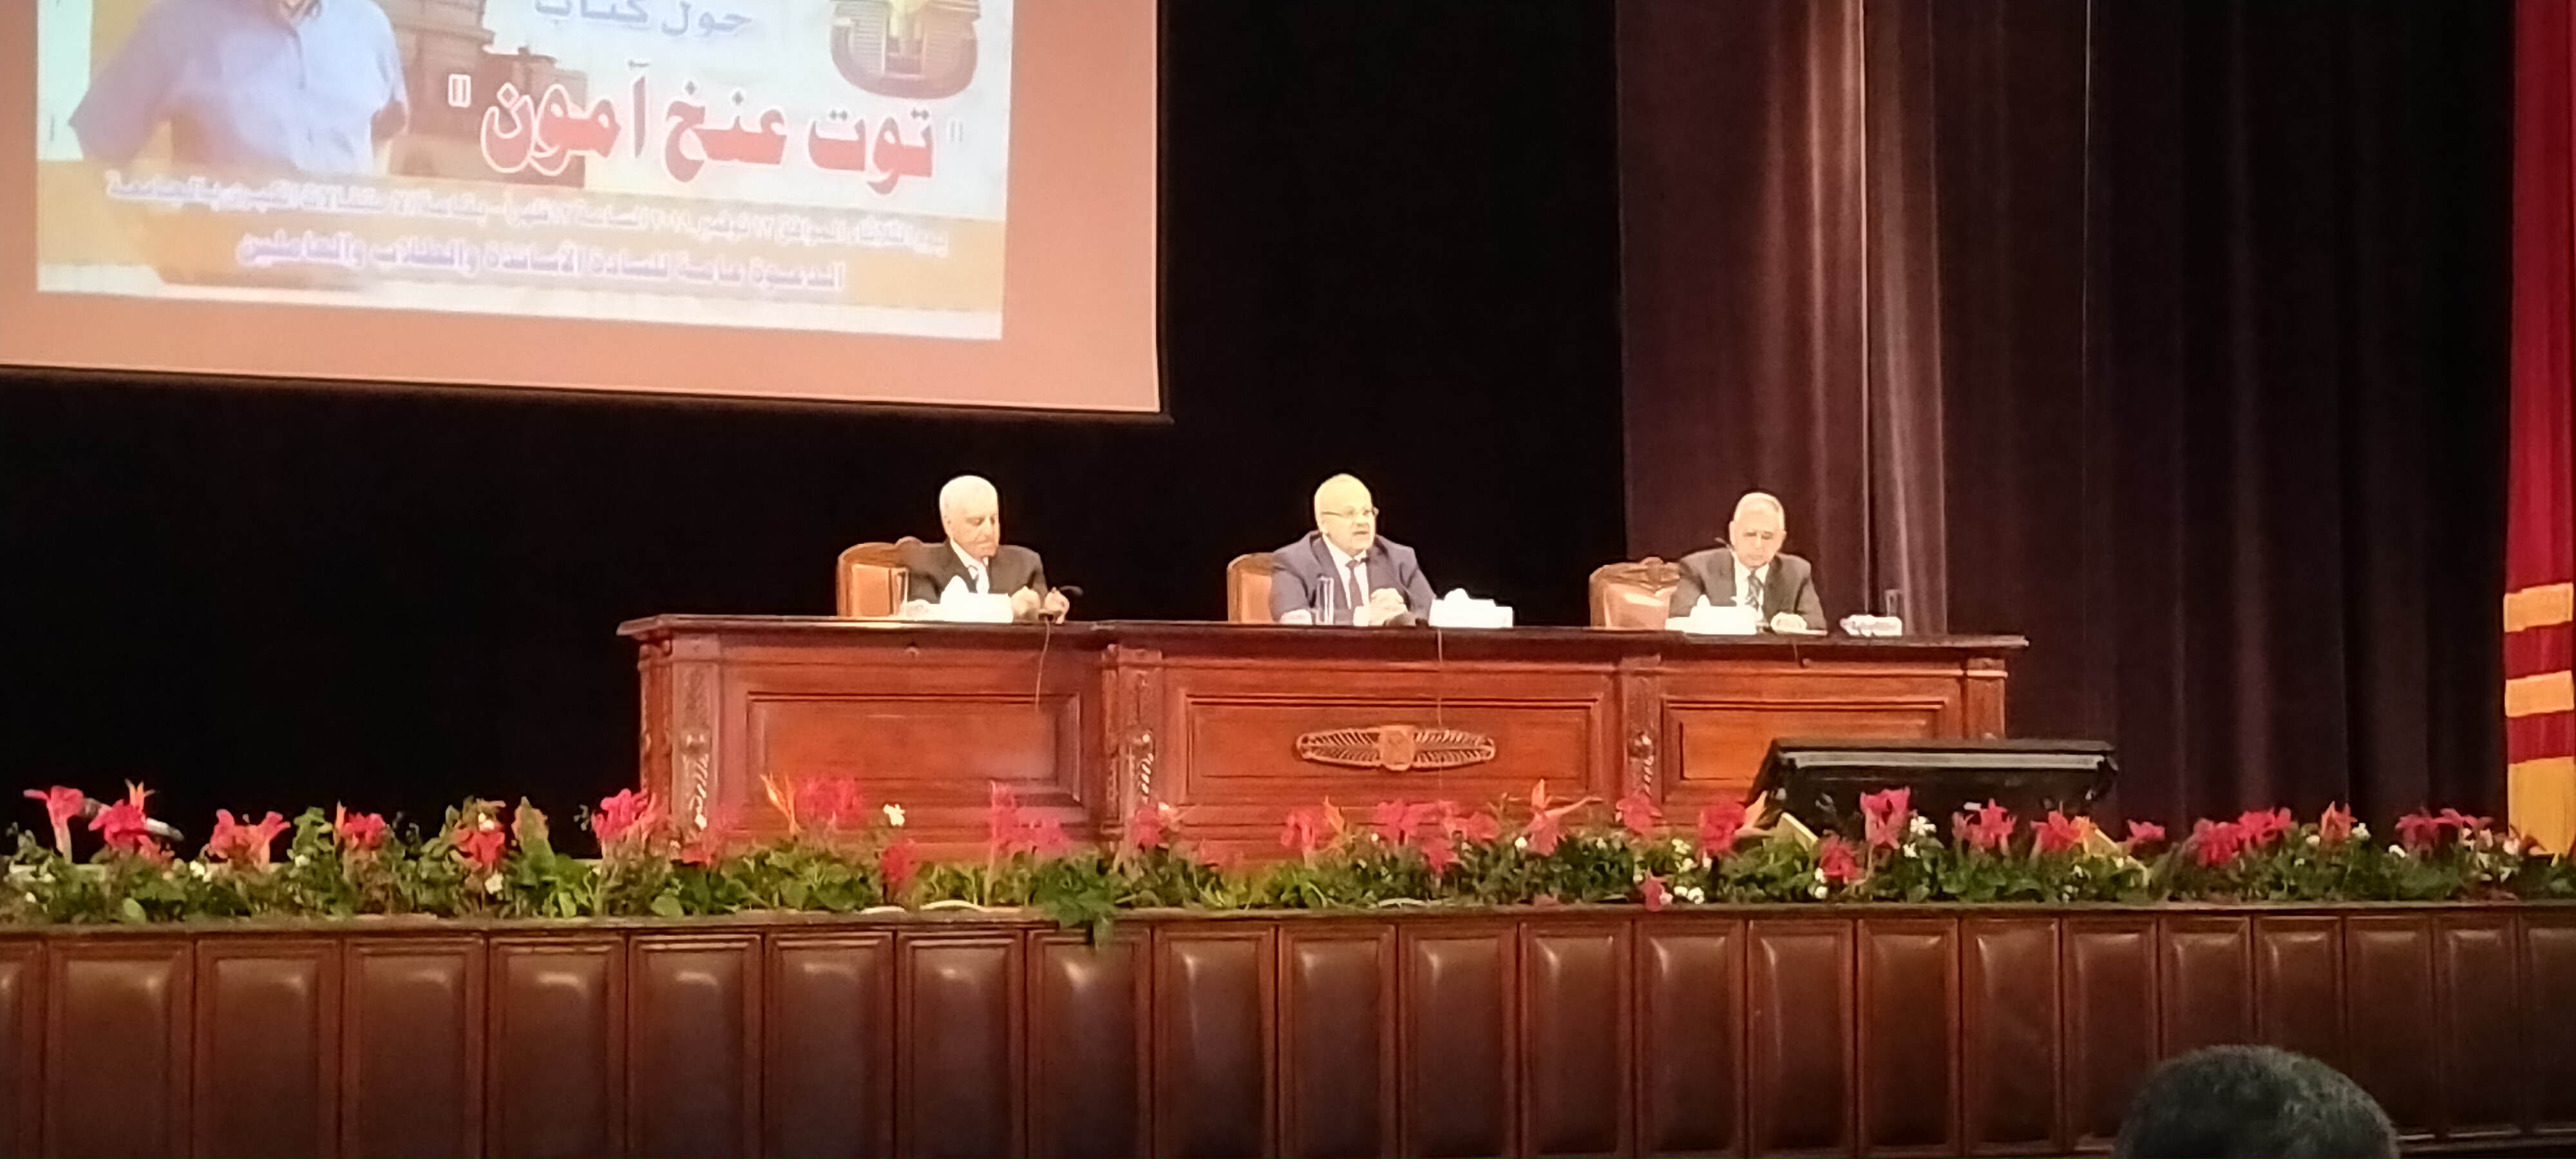 المحاضرة التى تنظمها جامعة القاهرة بحضور الدكتور زاهى حواس  (10)